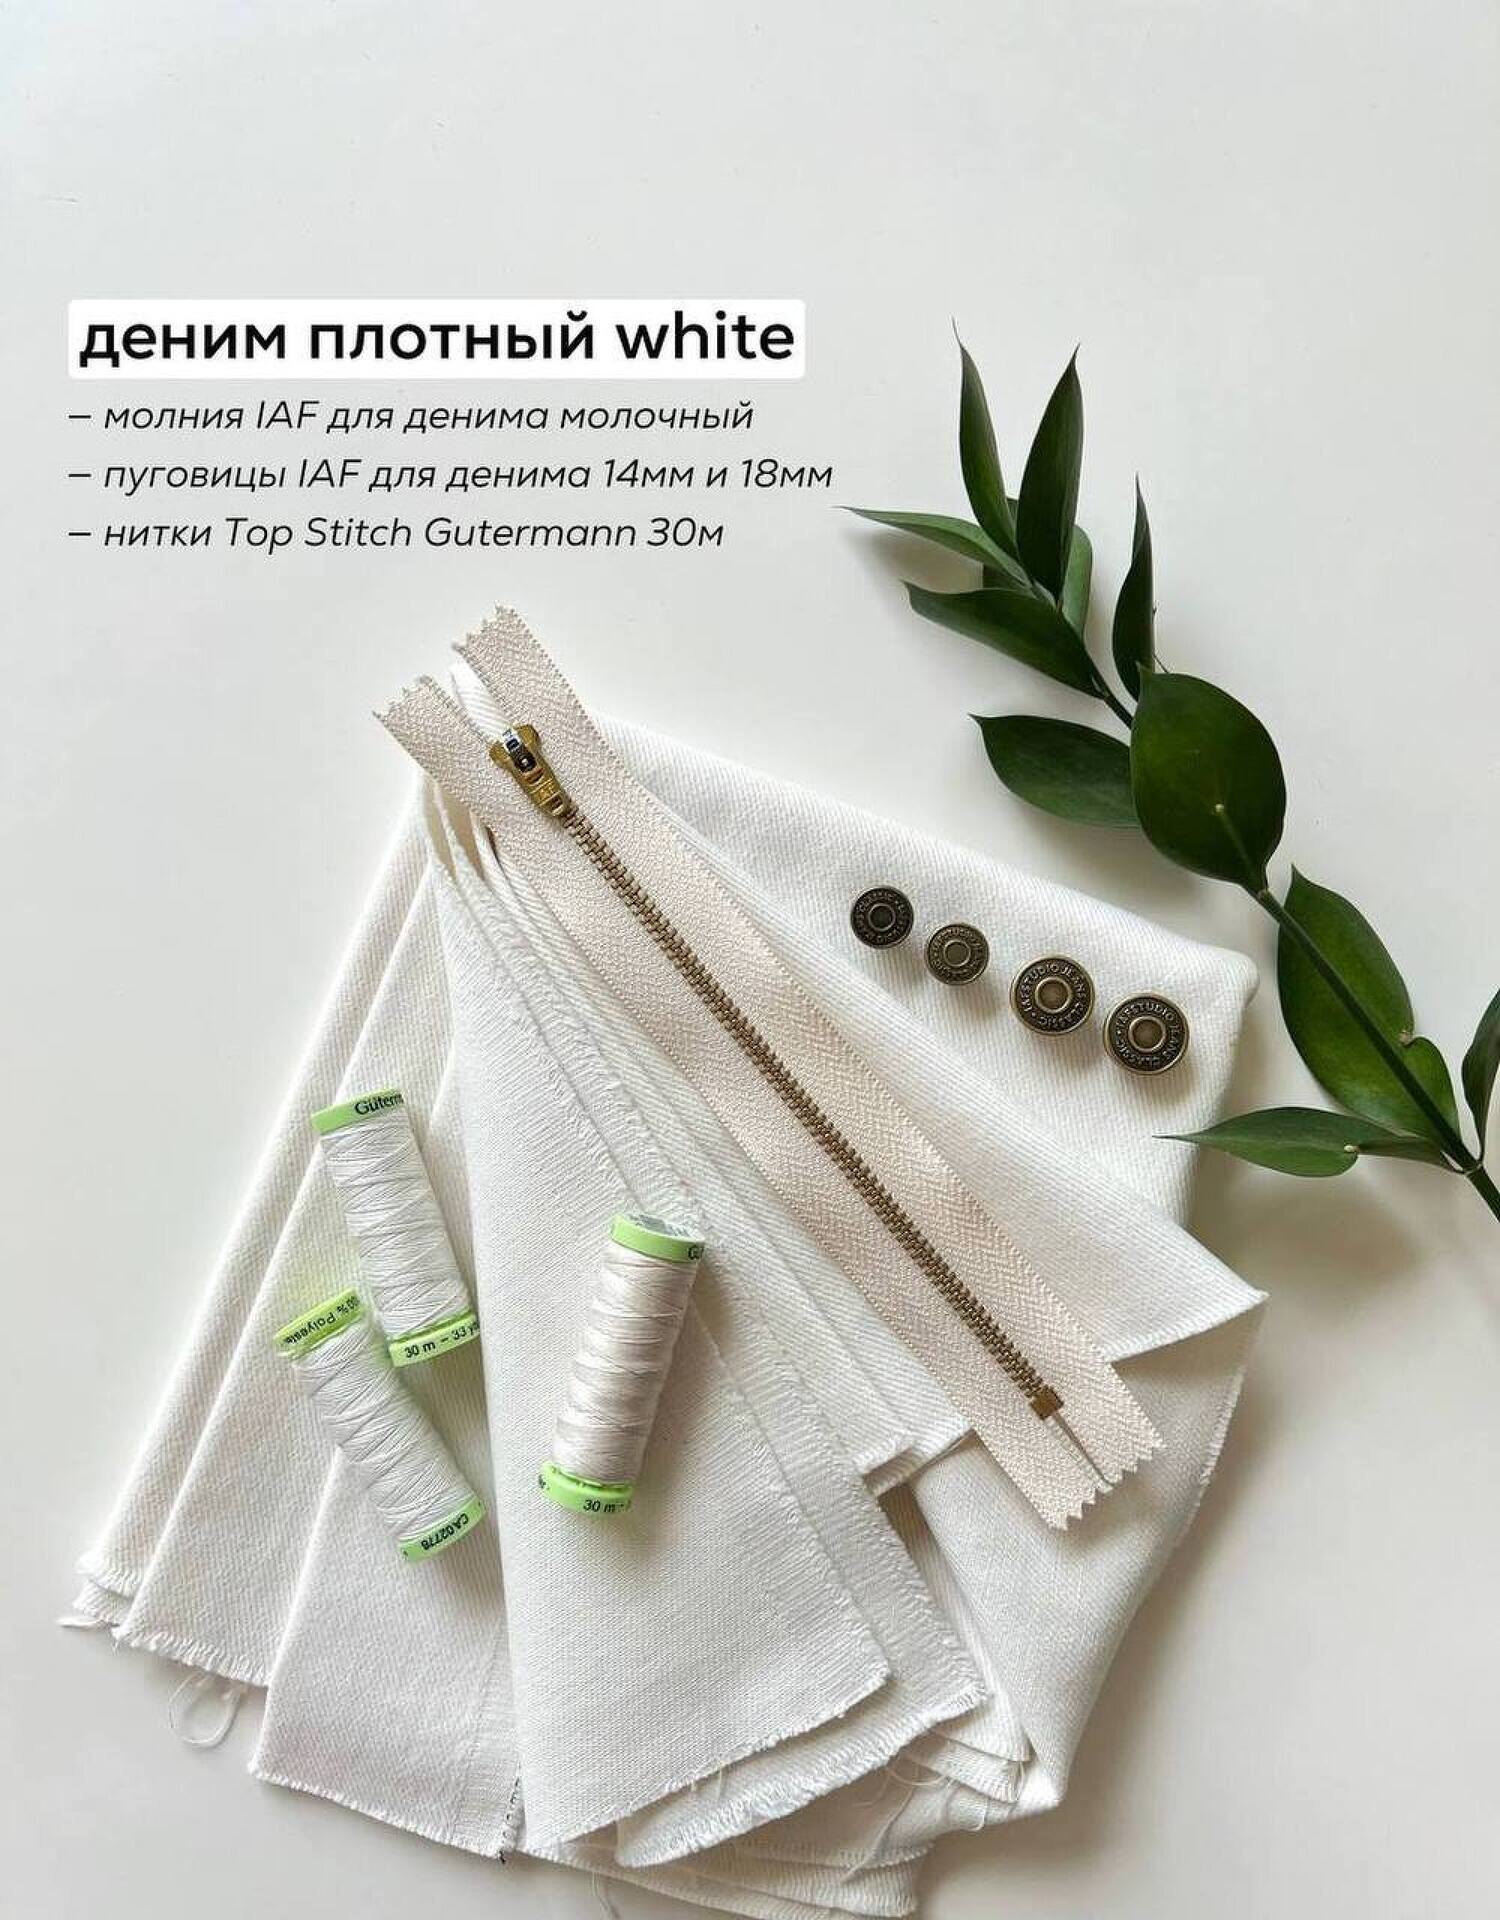 Деним white плотный (380) предзаказ